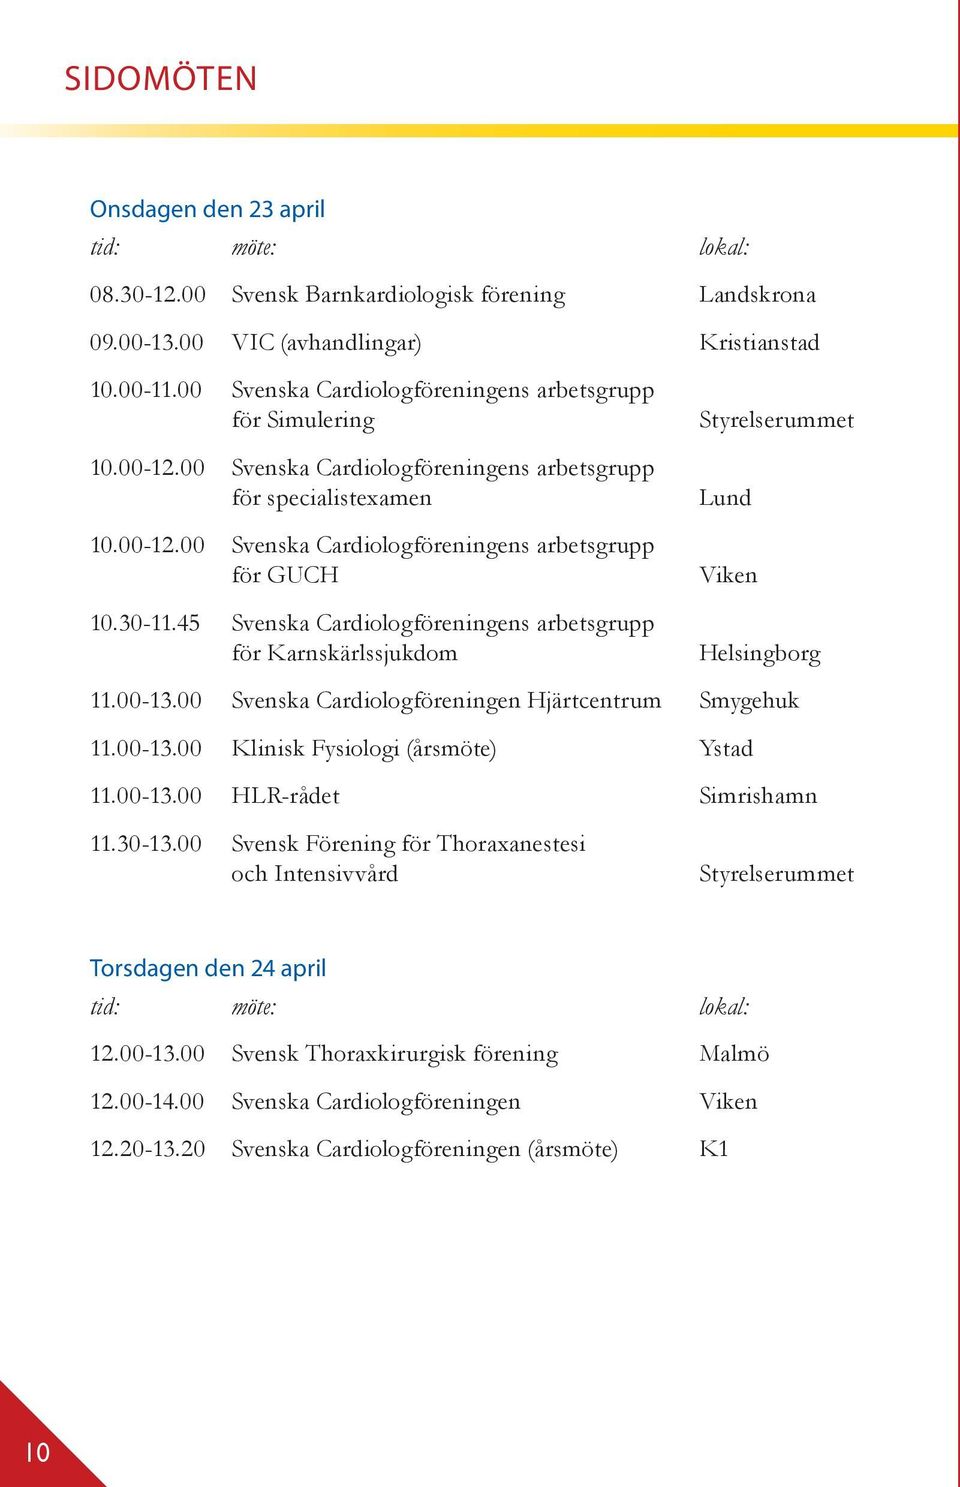 30-11.45 Svenska Cardiologföreningens arbetsgrupp för Karnskärlssjukdom Styrelserummet Lund Viken Helsingborg 11.00-13.00 Svenska Cardiologföreningen Hjärtcentrum Smygehuk 11.00-13.00 Klinisk Fysiologi (årsmöte) Ystad 11.